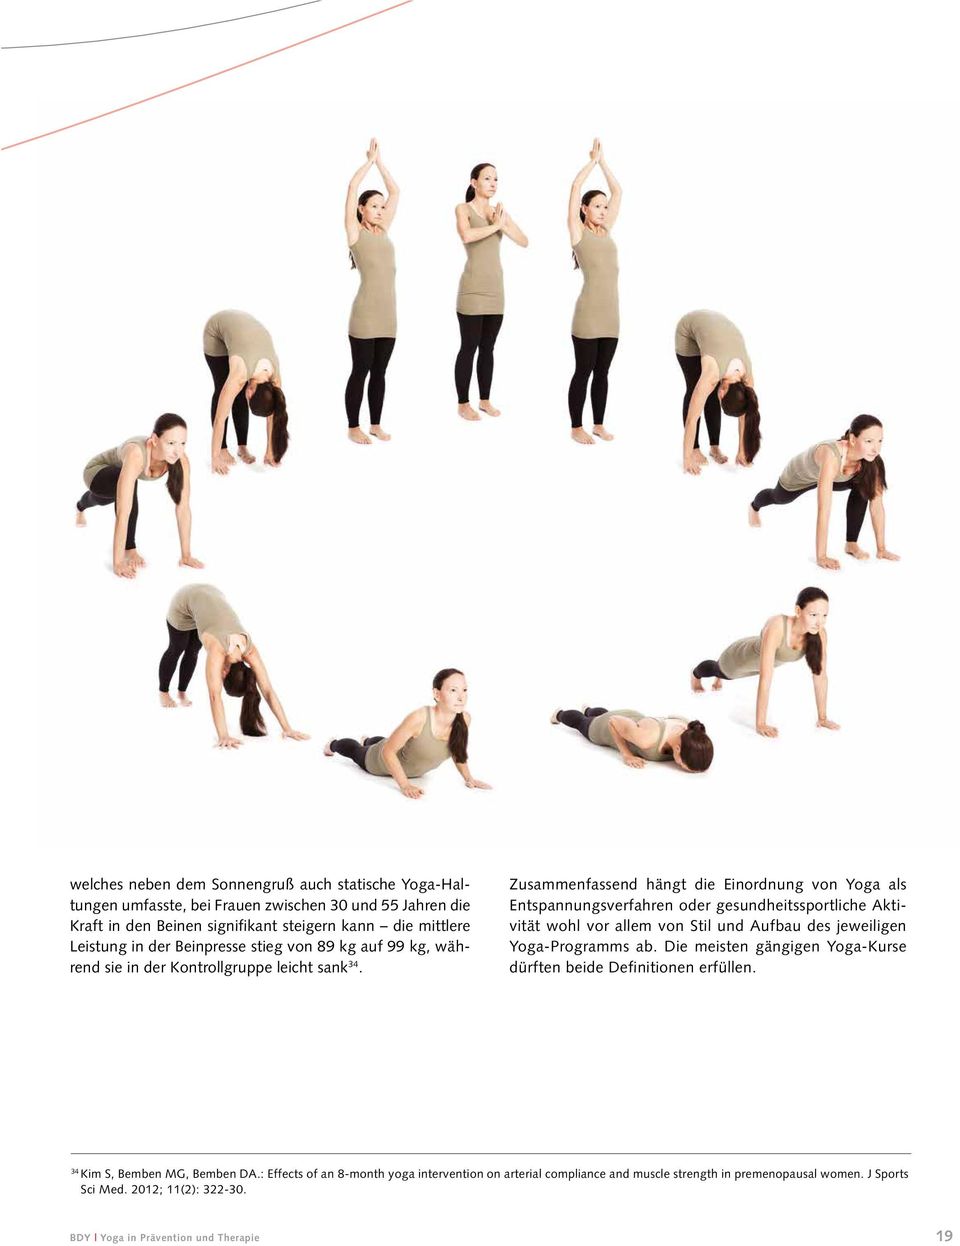 Zusammenfassend hängt die Einordnung von Yoga als Entspannungsverfahren oder gesundheitssportliche Aktivität wohl vor allem von Stil und Aufbau des jeweiligen Yoga-Programms ab.